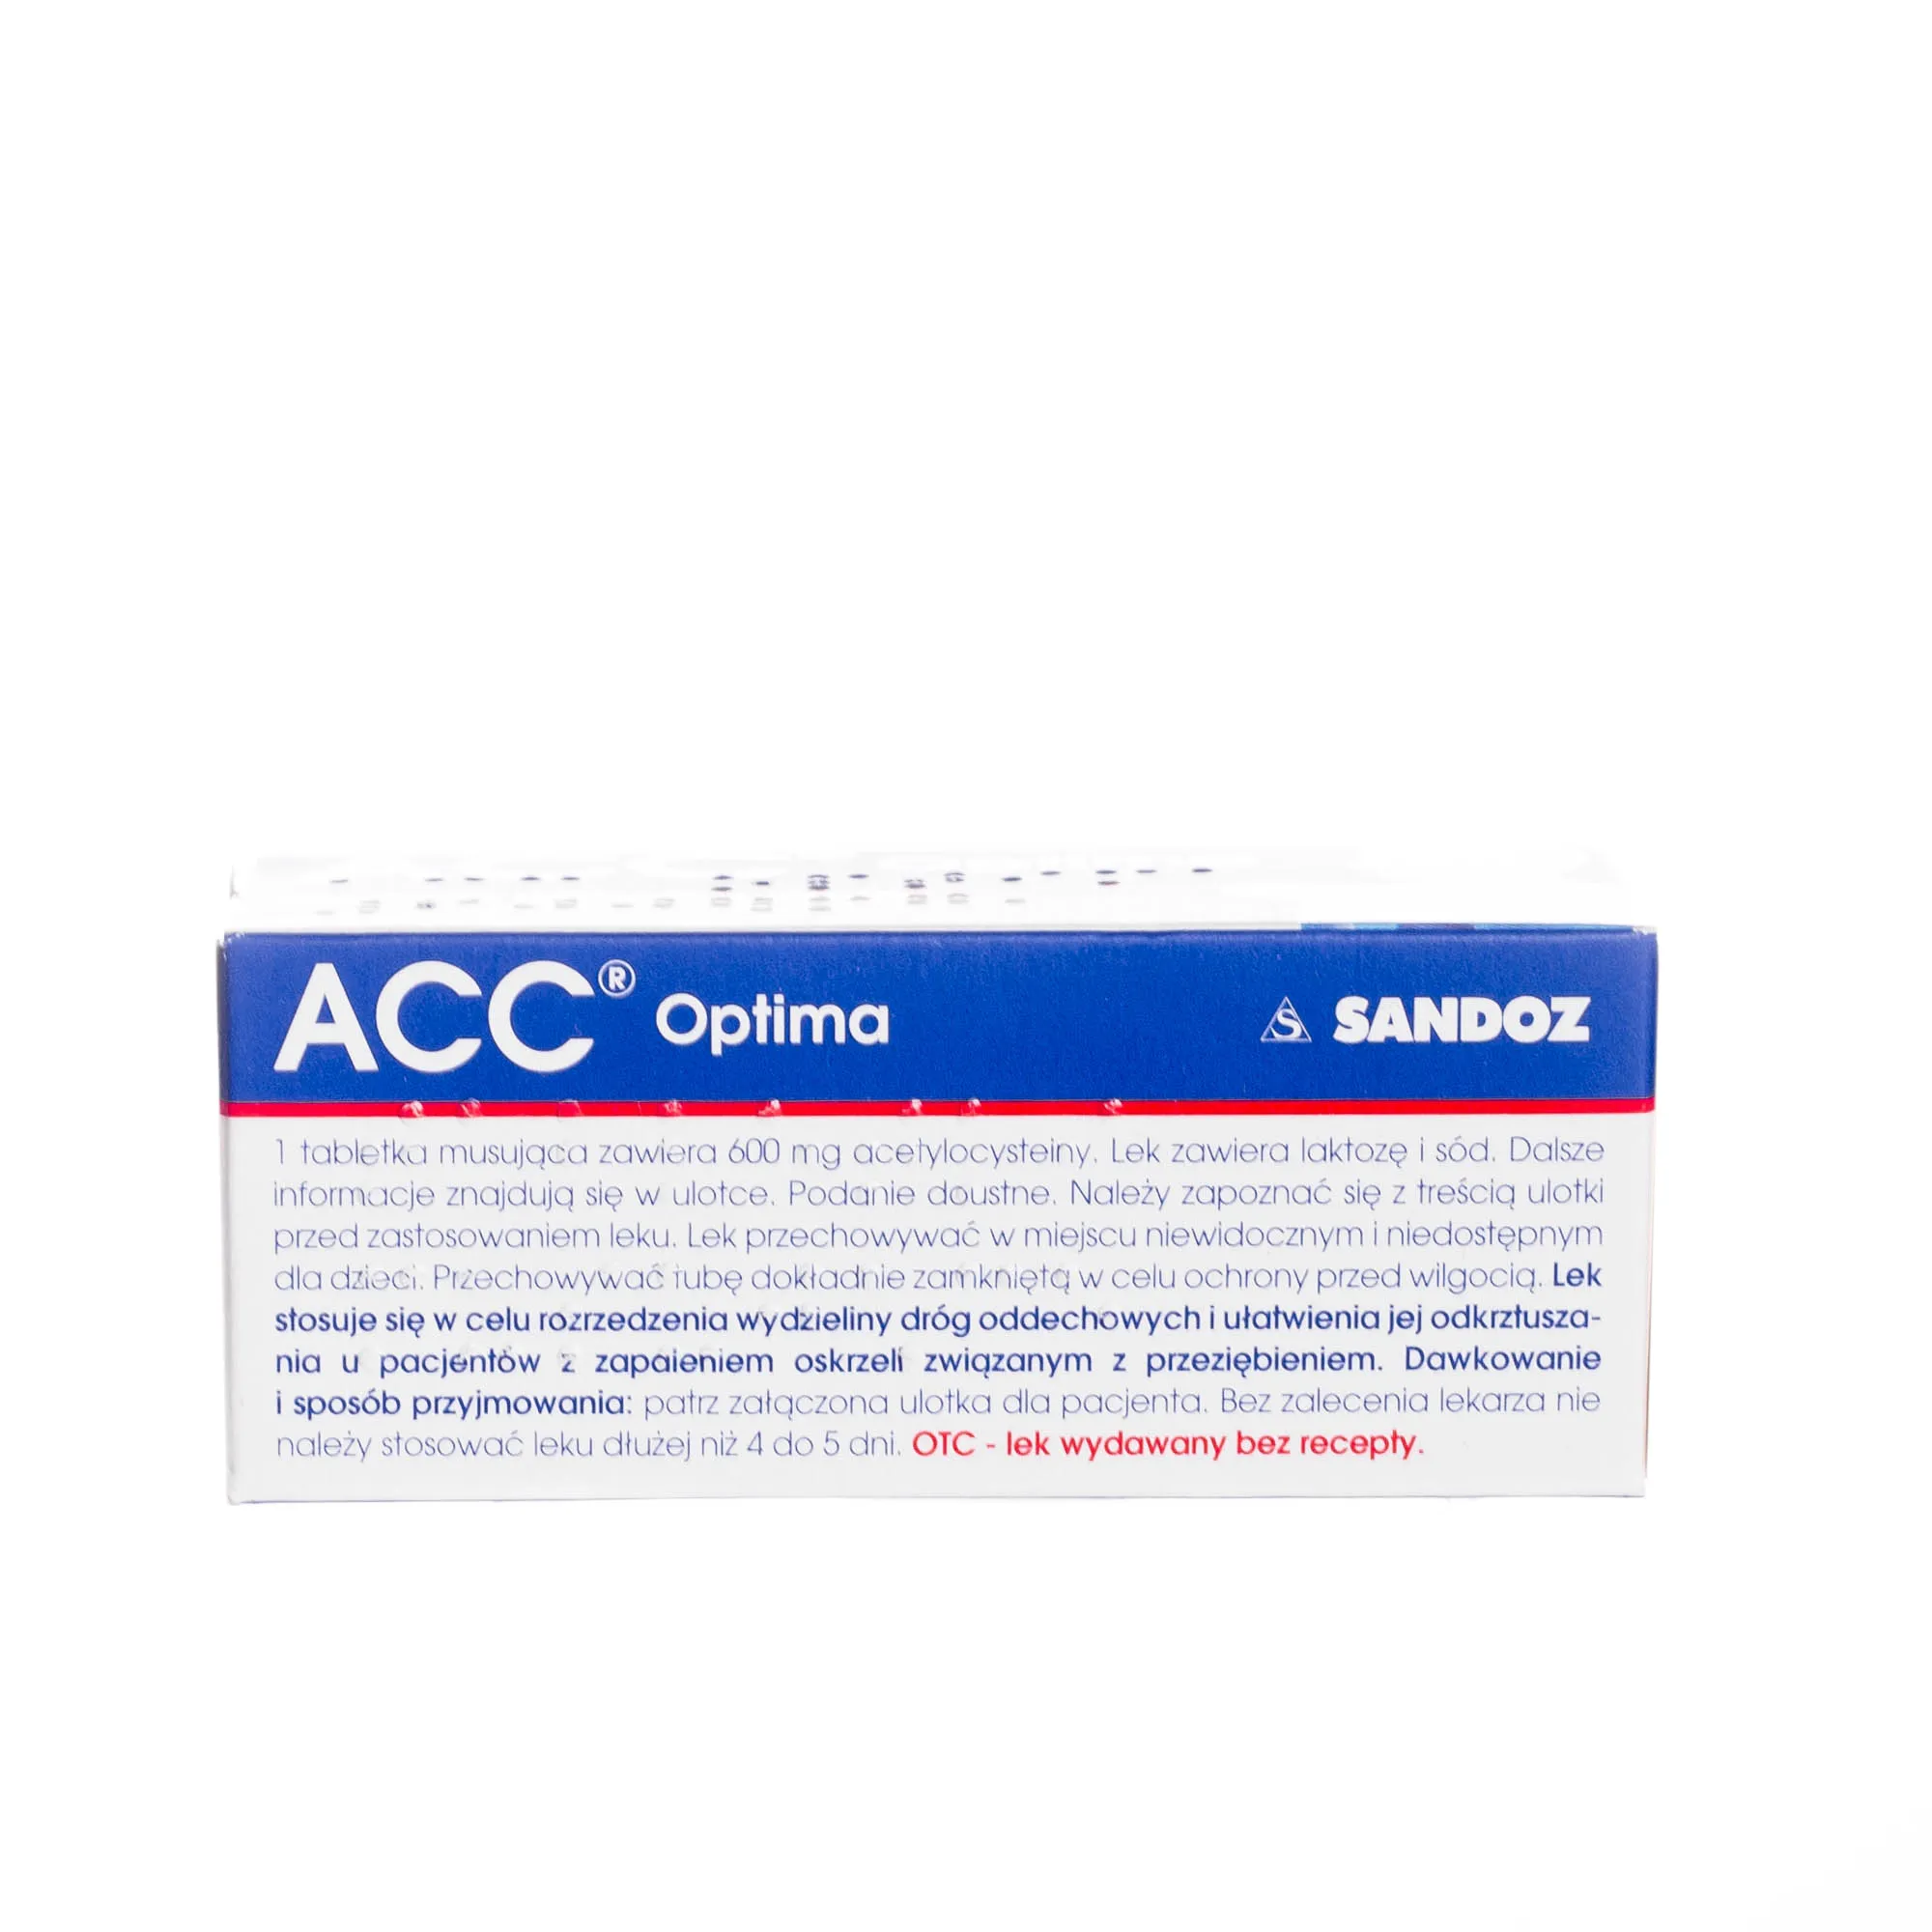 ACC Optima, 600 mg, 10 tabletek musujących 